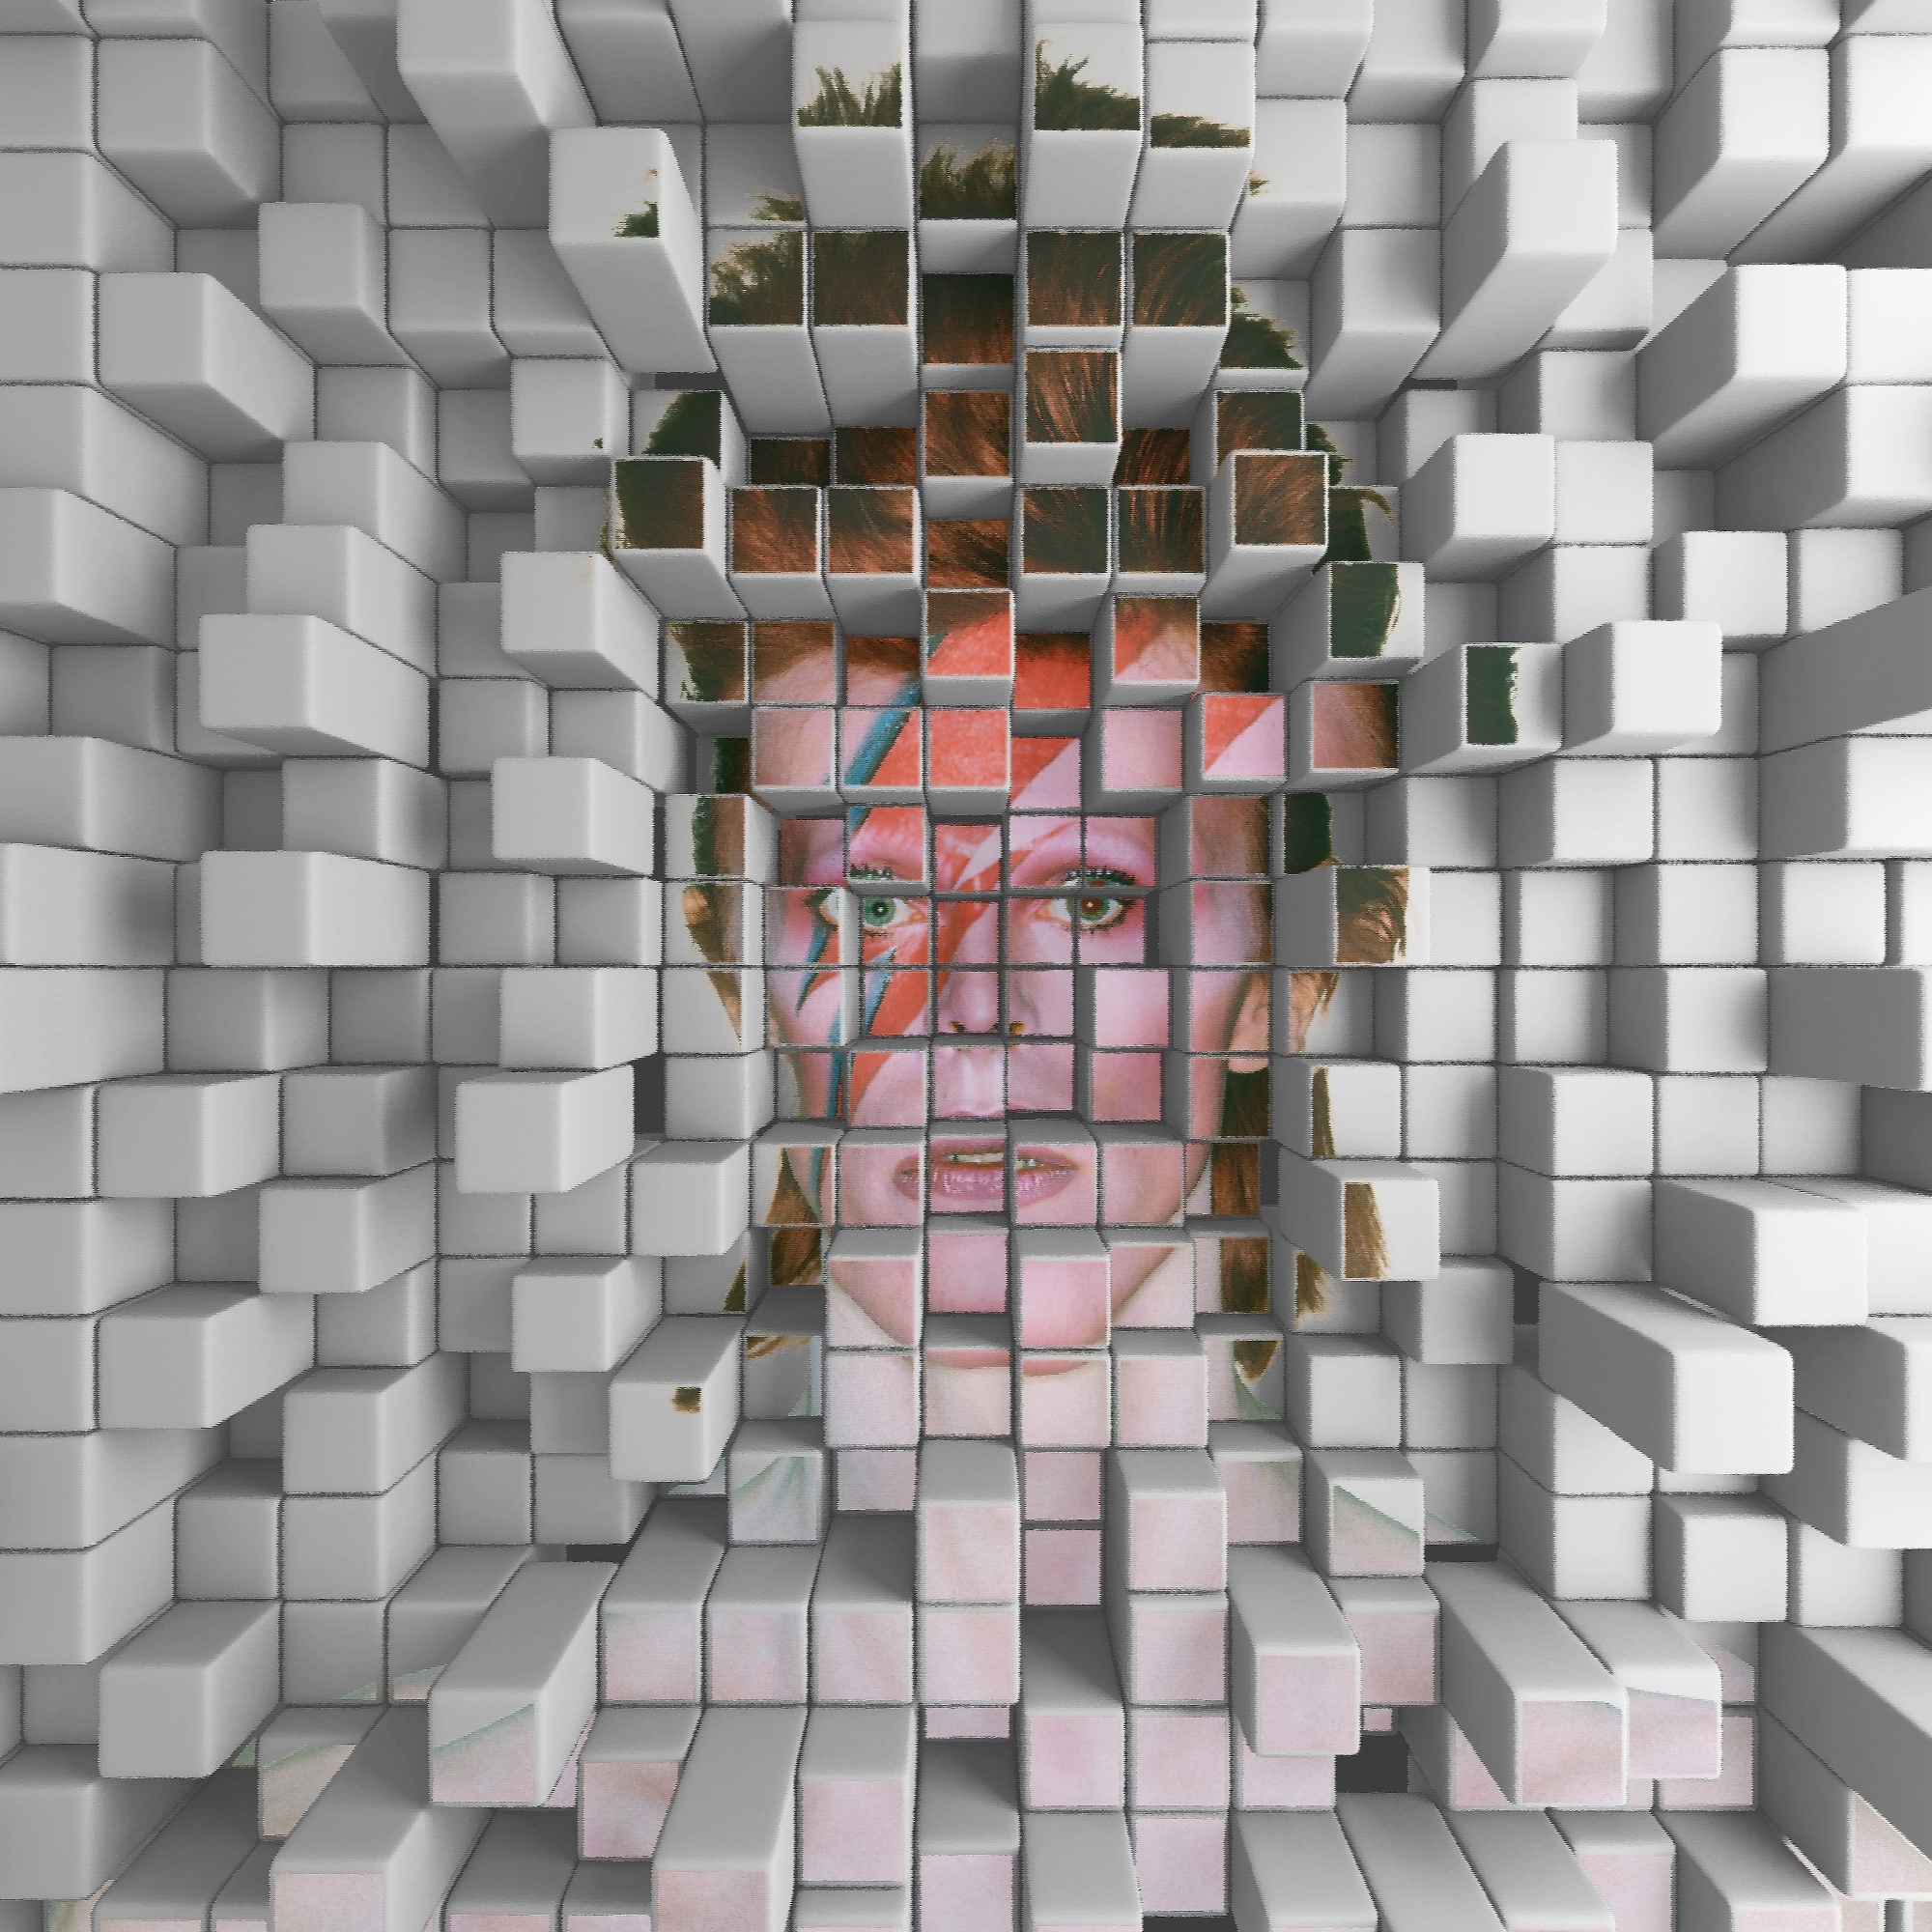 David Bowie Art Creation by Steve Stachini - Hideaway 70cm x 70cm